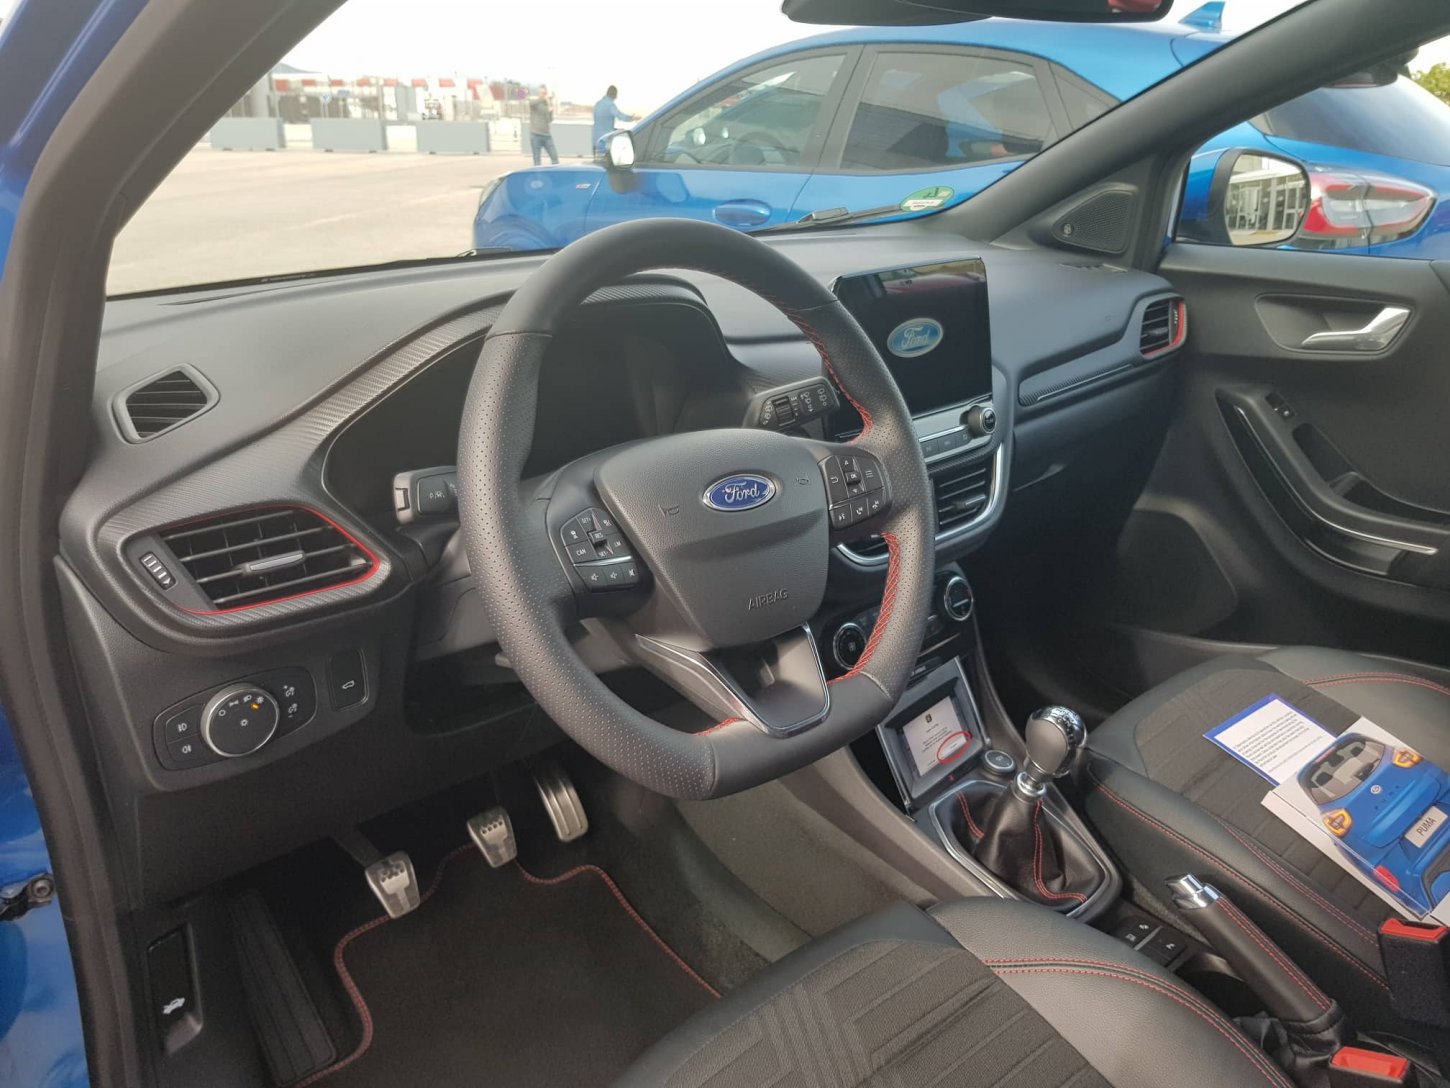 Ψηφιακός πίνακας οργάνων και ποιοτικά υλικά, προσδίδουν μια θετική πρώτη εικόνα στο εσωτερικό του νέου Ford Puma.